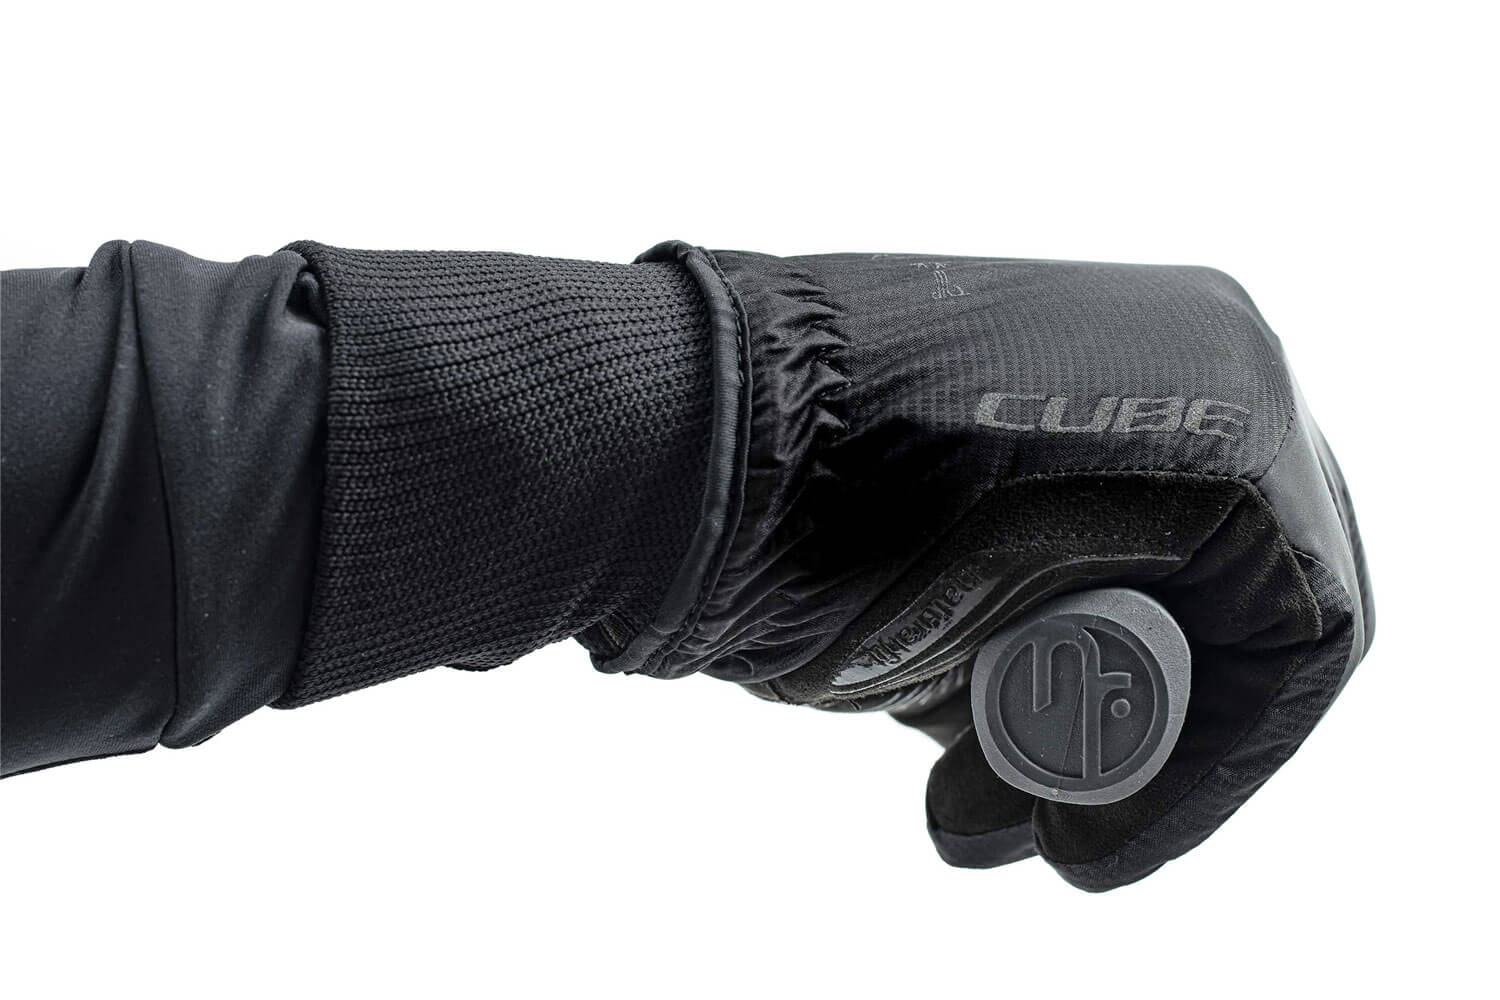 Cube Winter langfinger X NF Handschuhe  